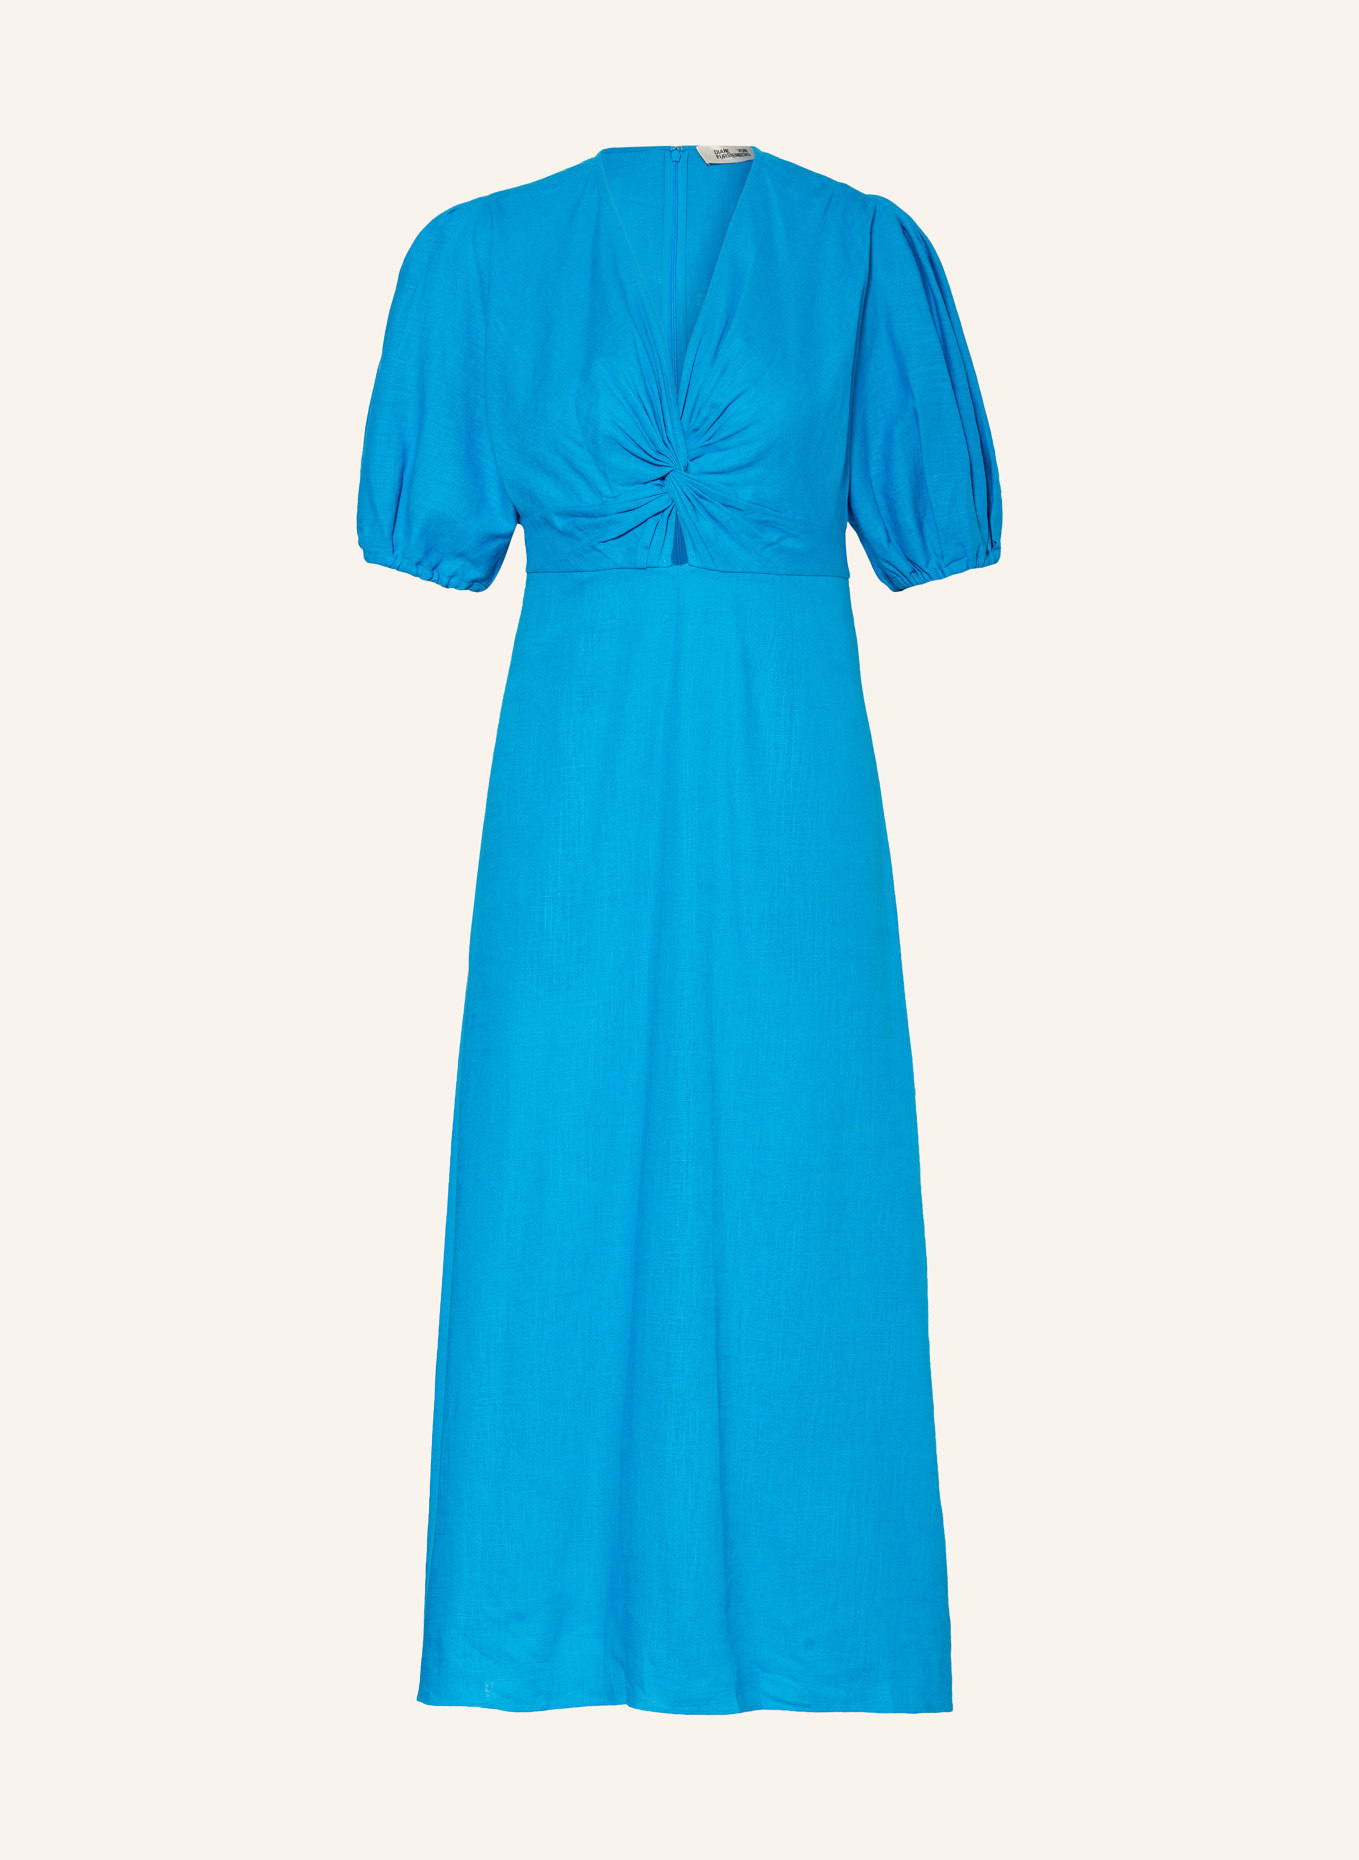 DIANE VON FURSTENBERG Kleid MAJORIE mit Leinen, Farbe: BLAU (Bild 1)